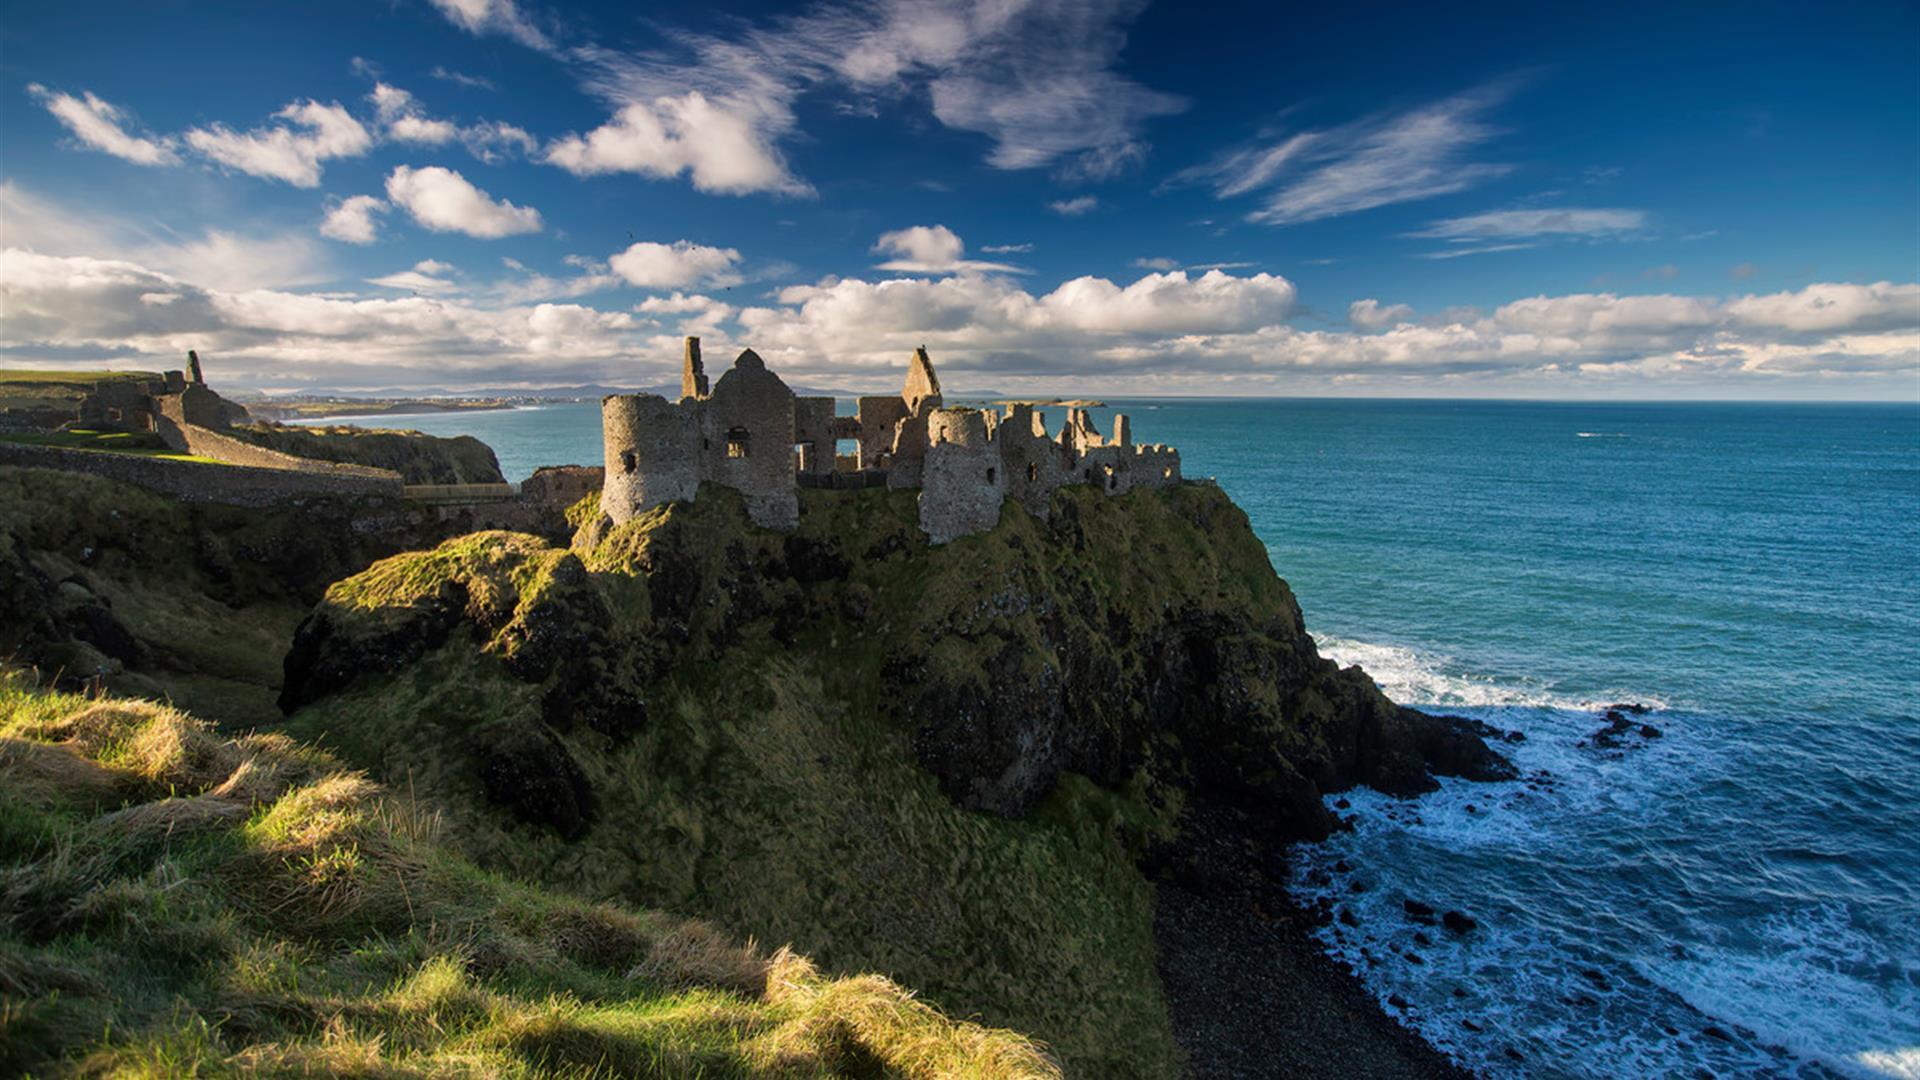 Dunluce Castle Medieval Irish Castle on the Antrim Coast